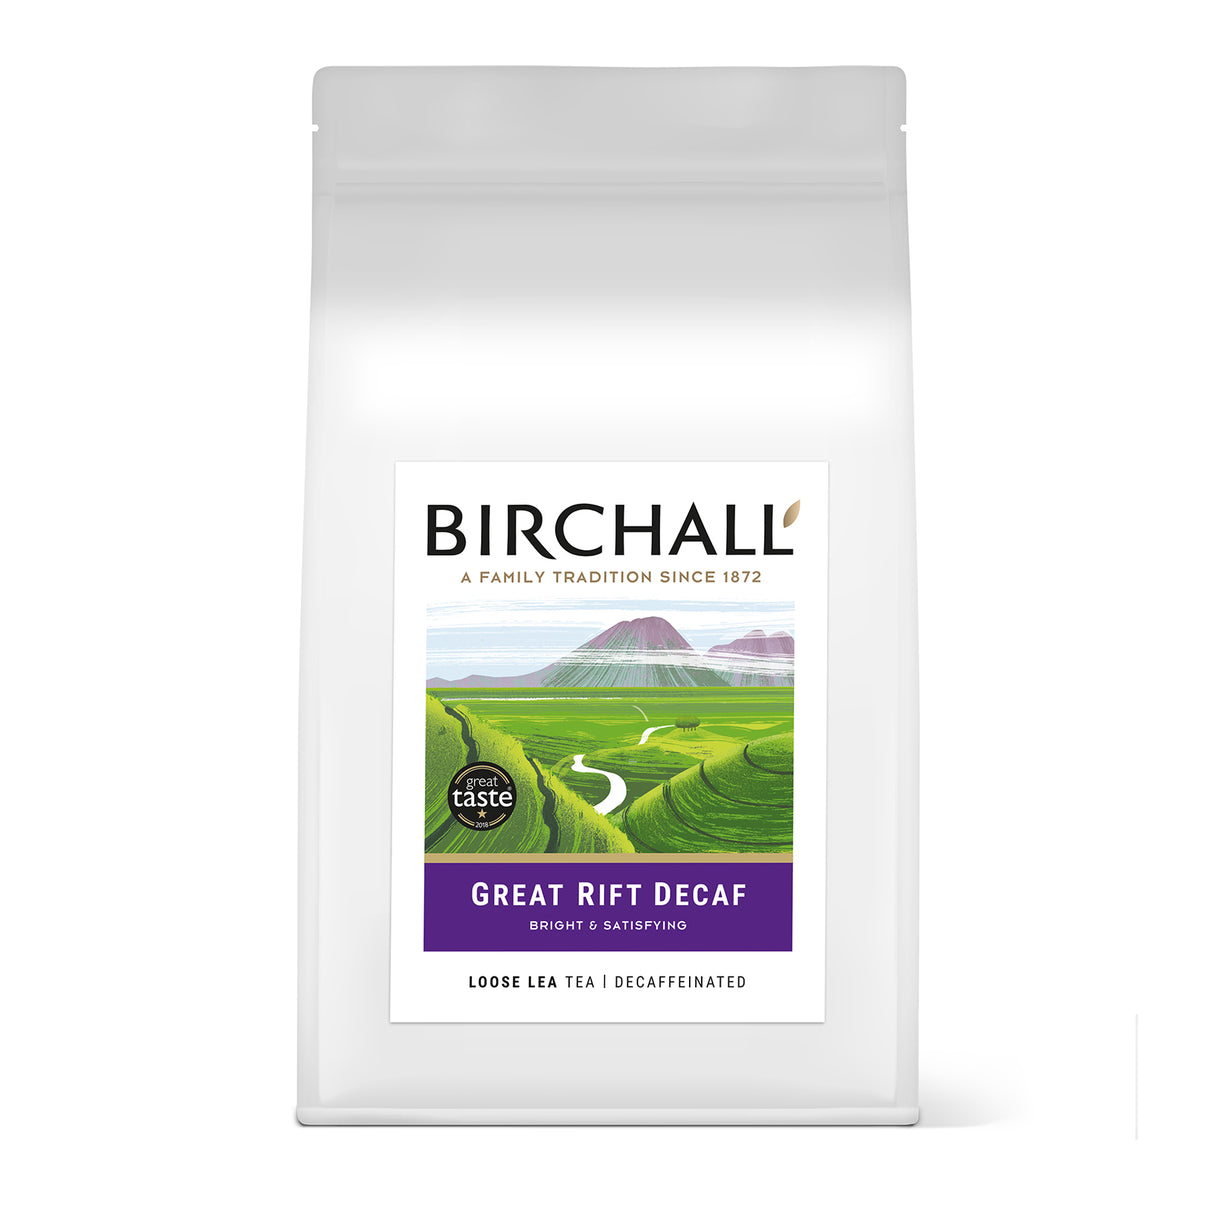 Birchall Decaffeinated Breakfast Tea Loose Leaf Tea 1kg